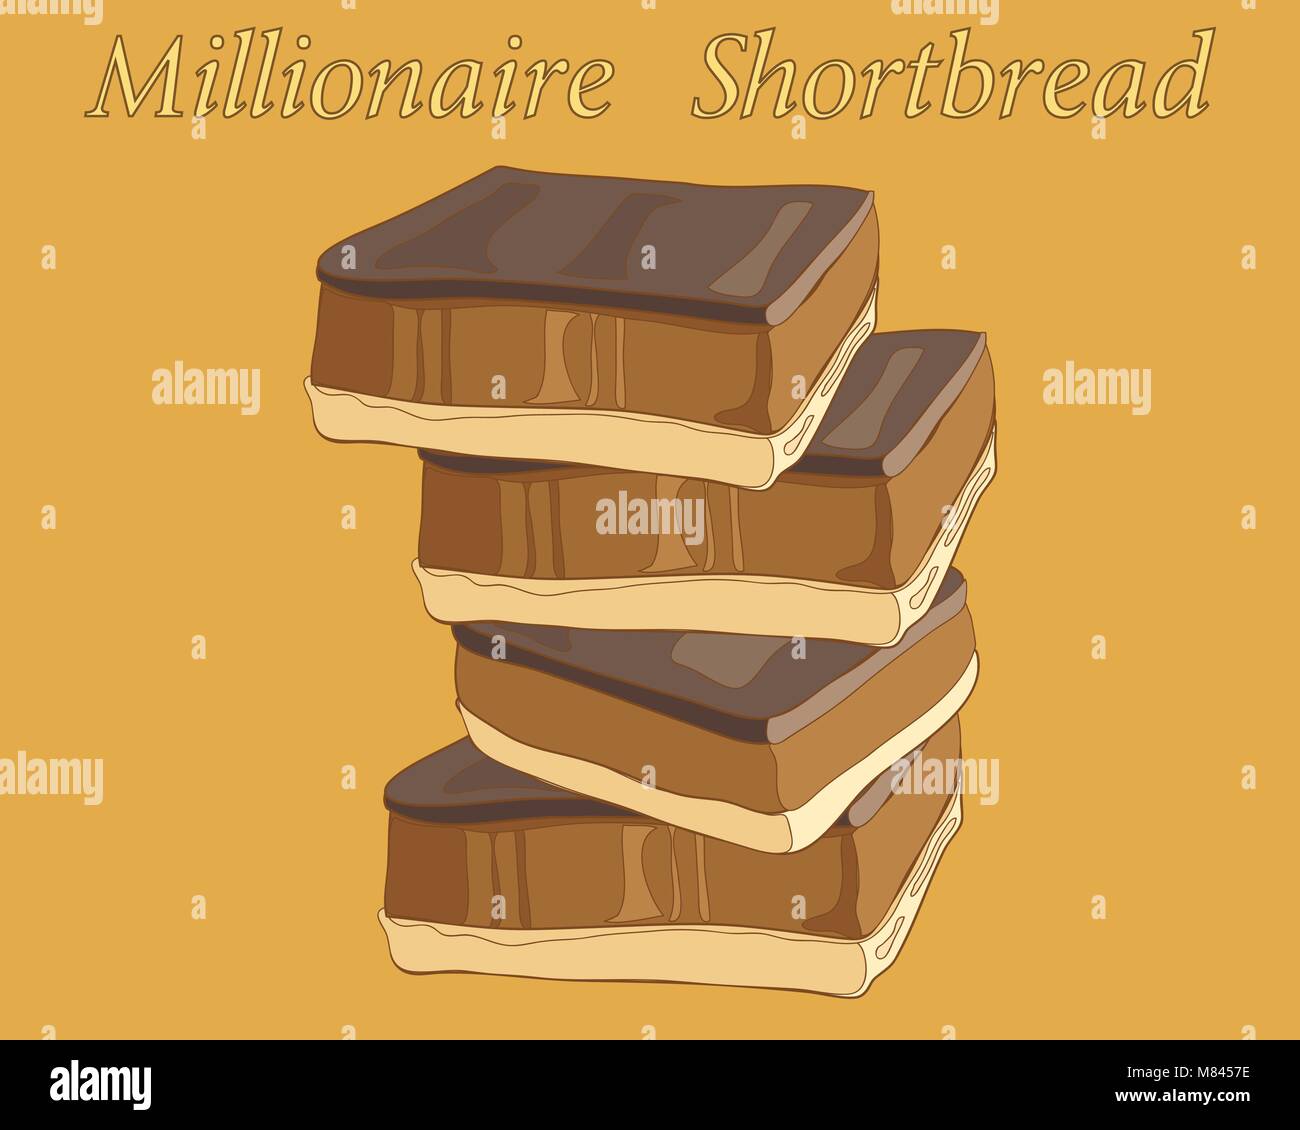 Un vecteur illustration en eps 8 format d'une pile de millionnaire sablés au chocolat et caramel sur un arrière-plan couleur caramel Illustration de Vecteur